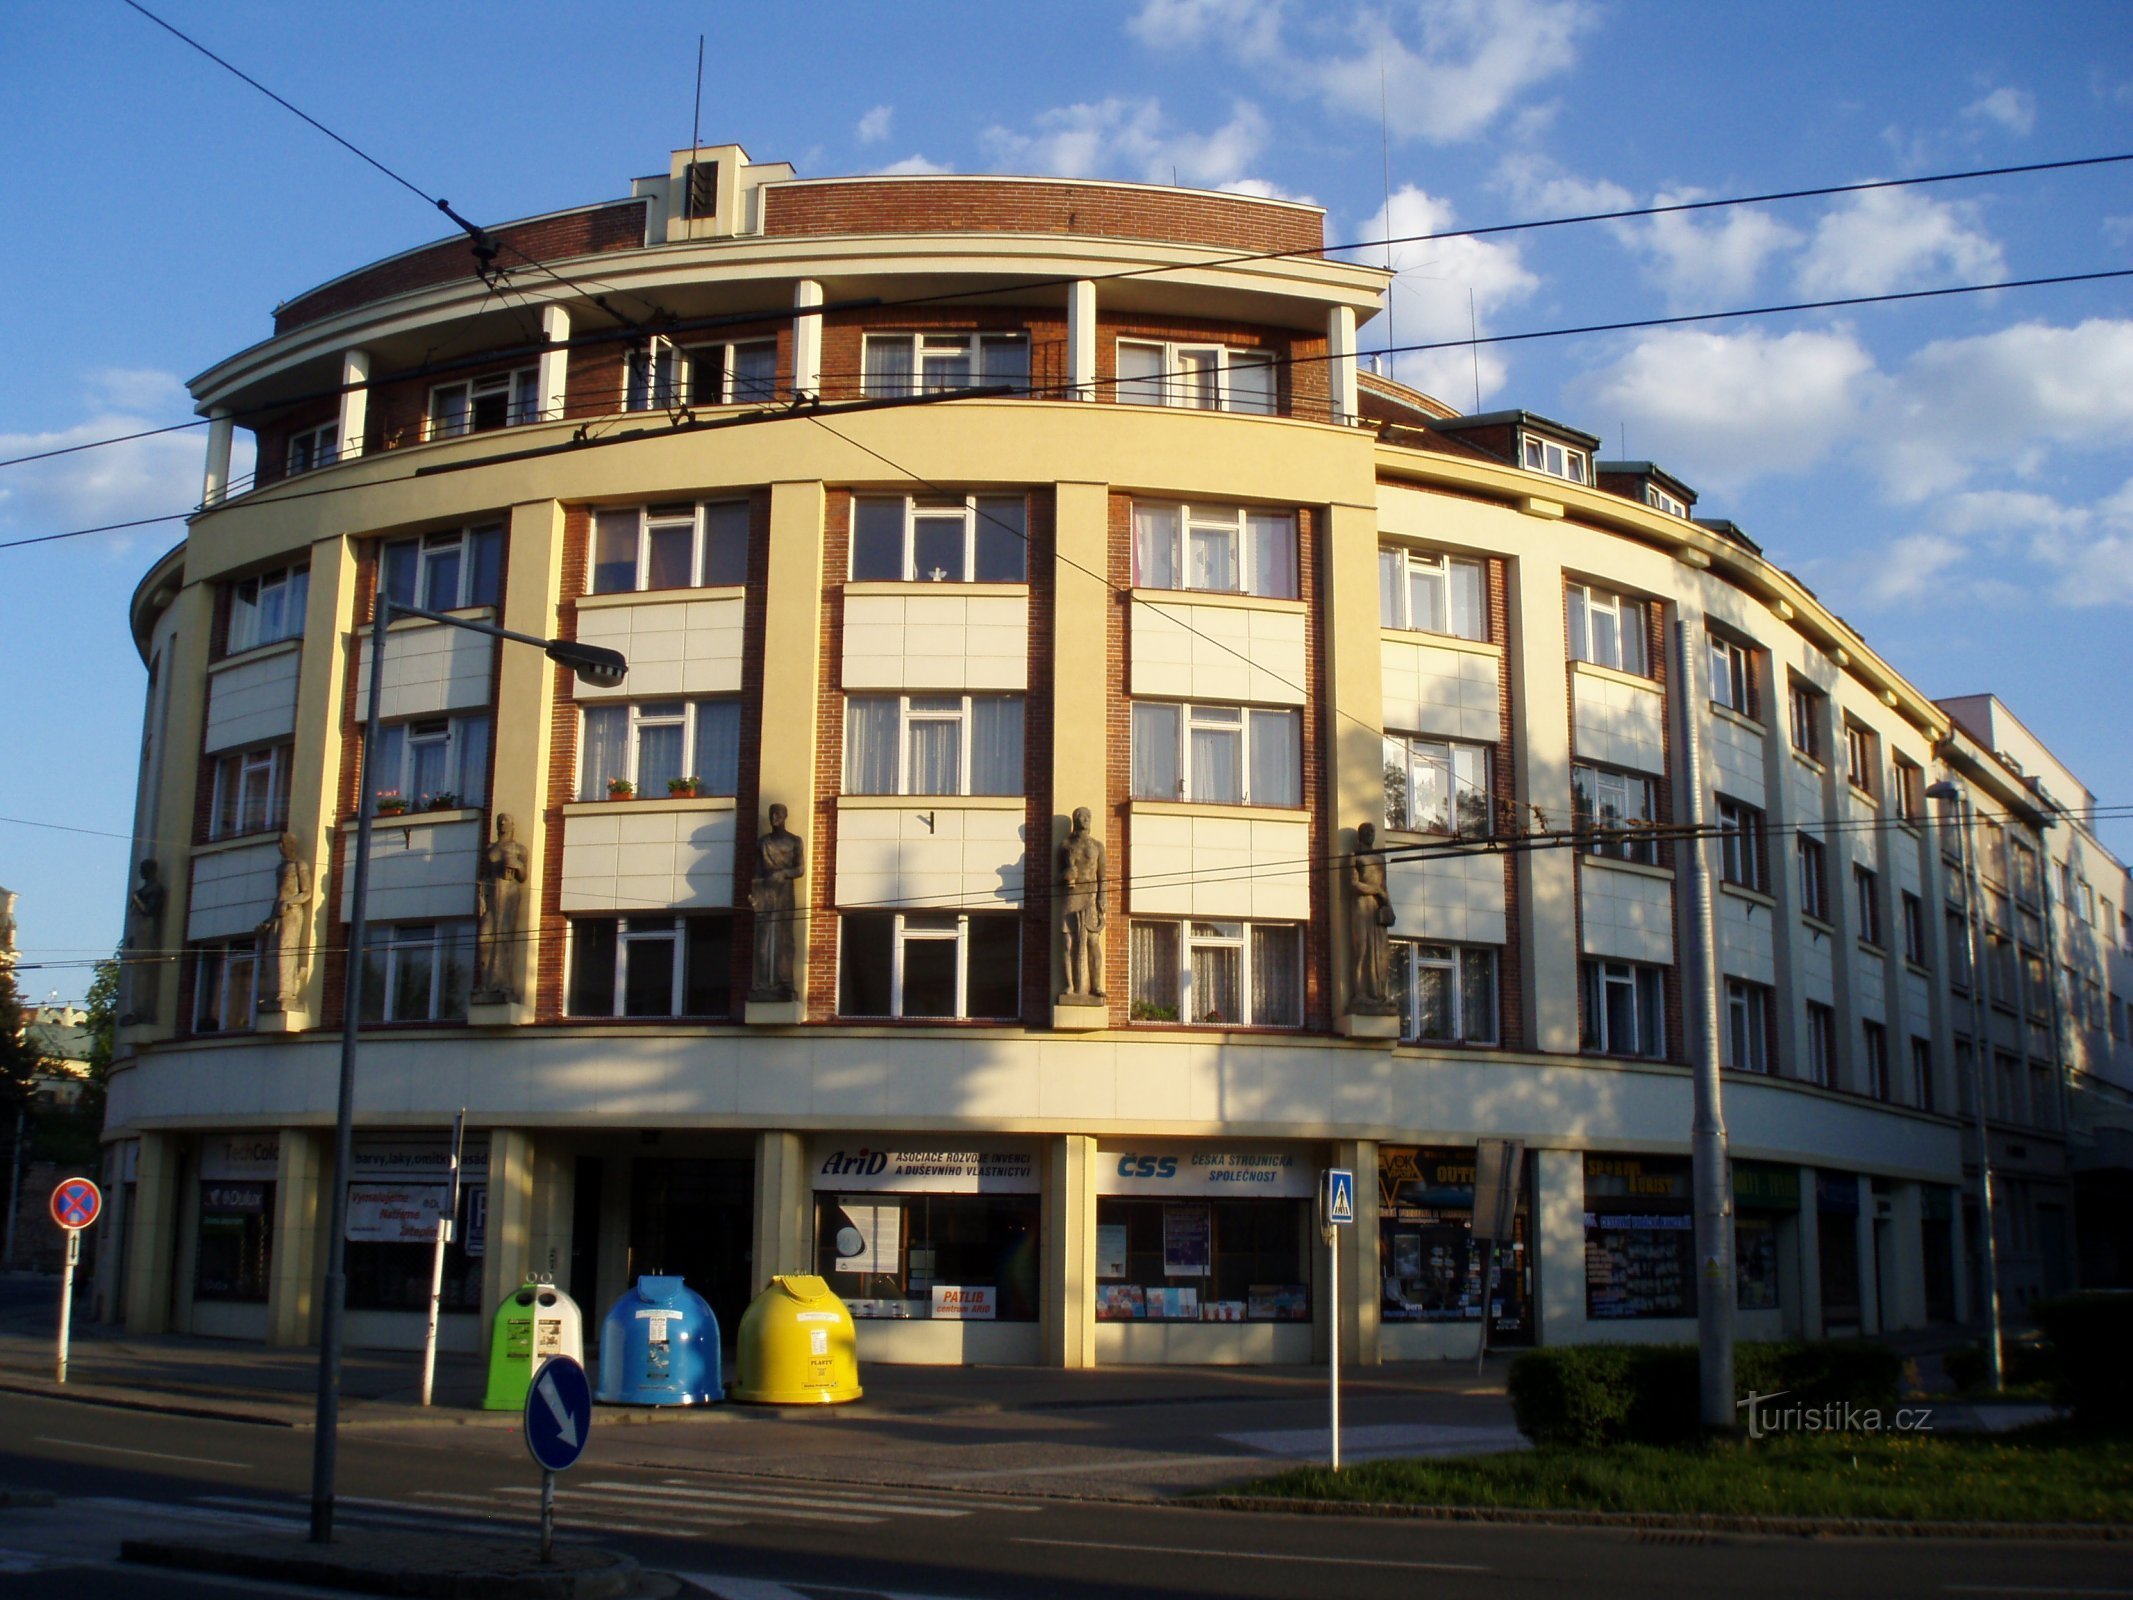 Det första tjeckiska ömsesidiga försäkringsbolaget (Hradec Králové, 1.5.2012 maj XNUMX)